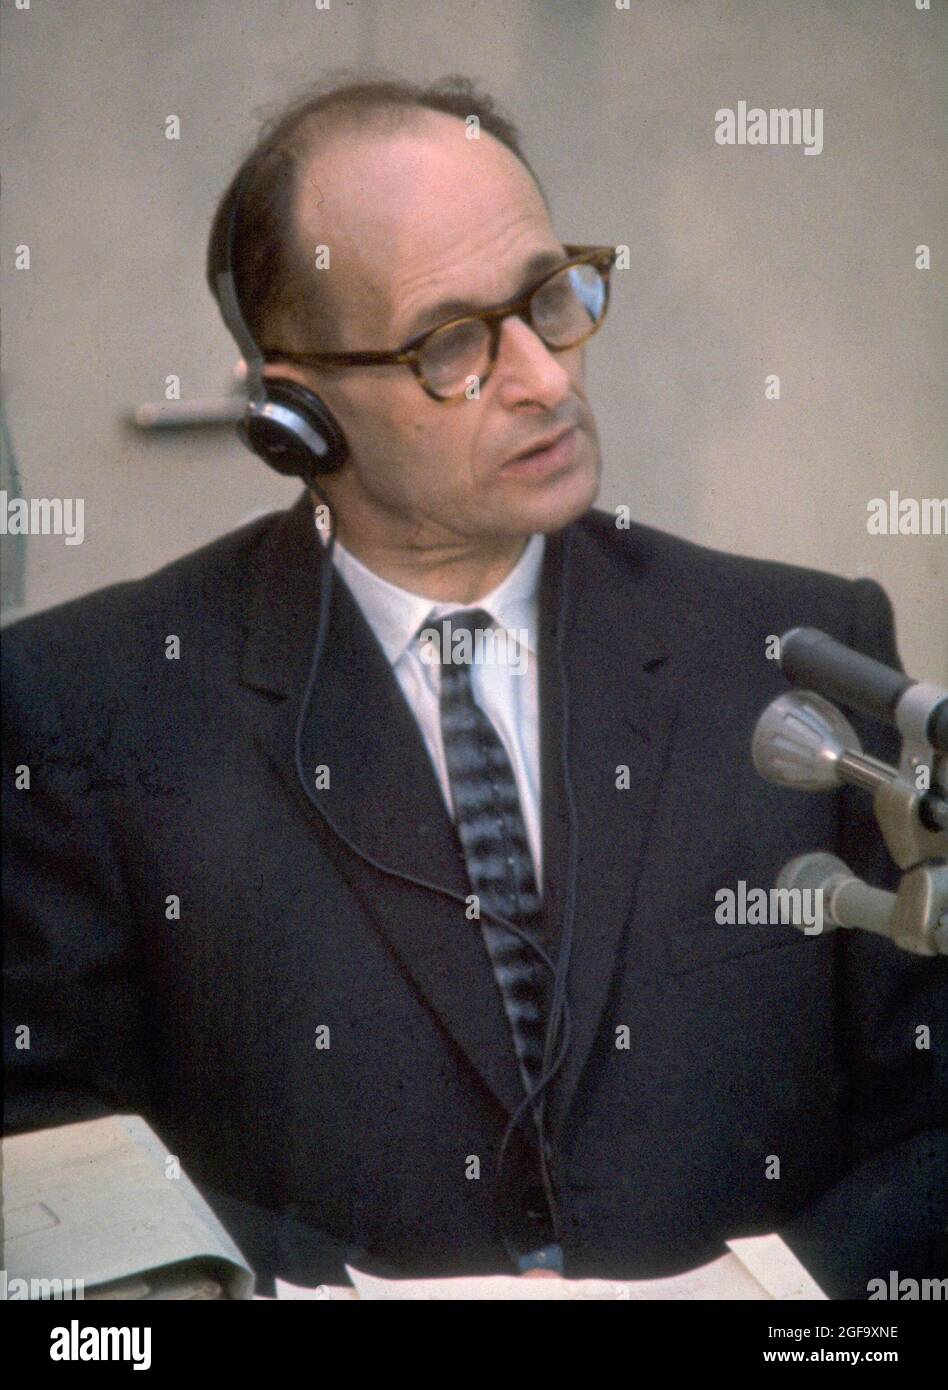 Il leader nazista e politico Adolf Eichmann in processo in Isreale. La sua abilità nella logistica lo ha reso uno dei principali organizzatori dell'Olocausto. Fuggì dalla Germania nel 1950 e andò in Argentina dove fu catturato da agenti israeliani. Fu processato e condannato a morte in Israele nel 1962 Foto Stock